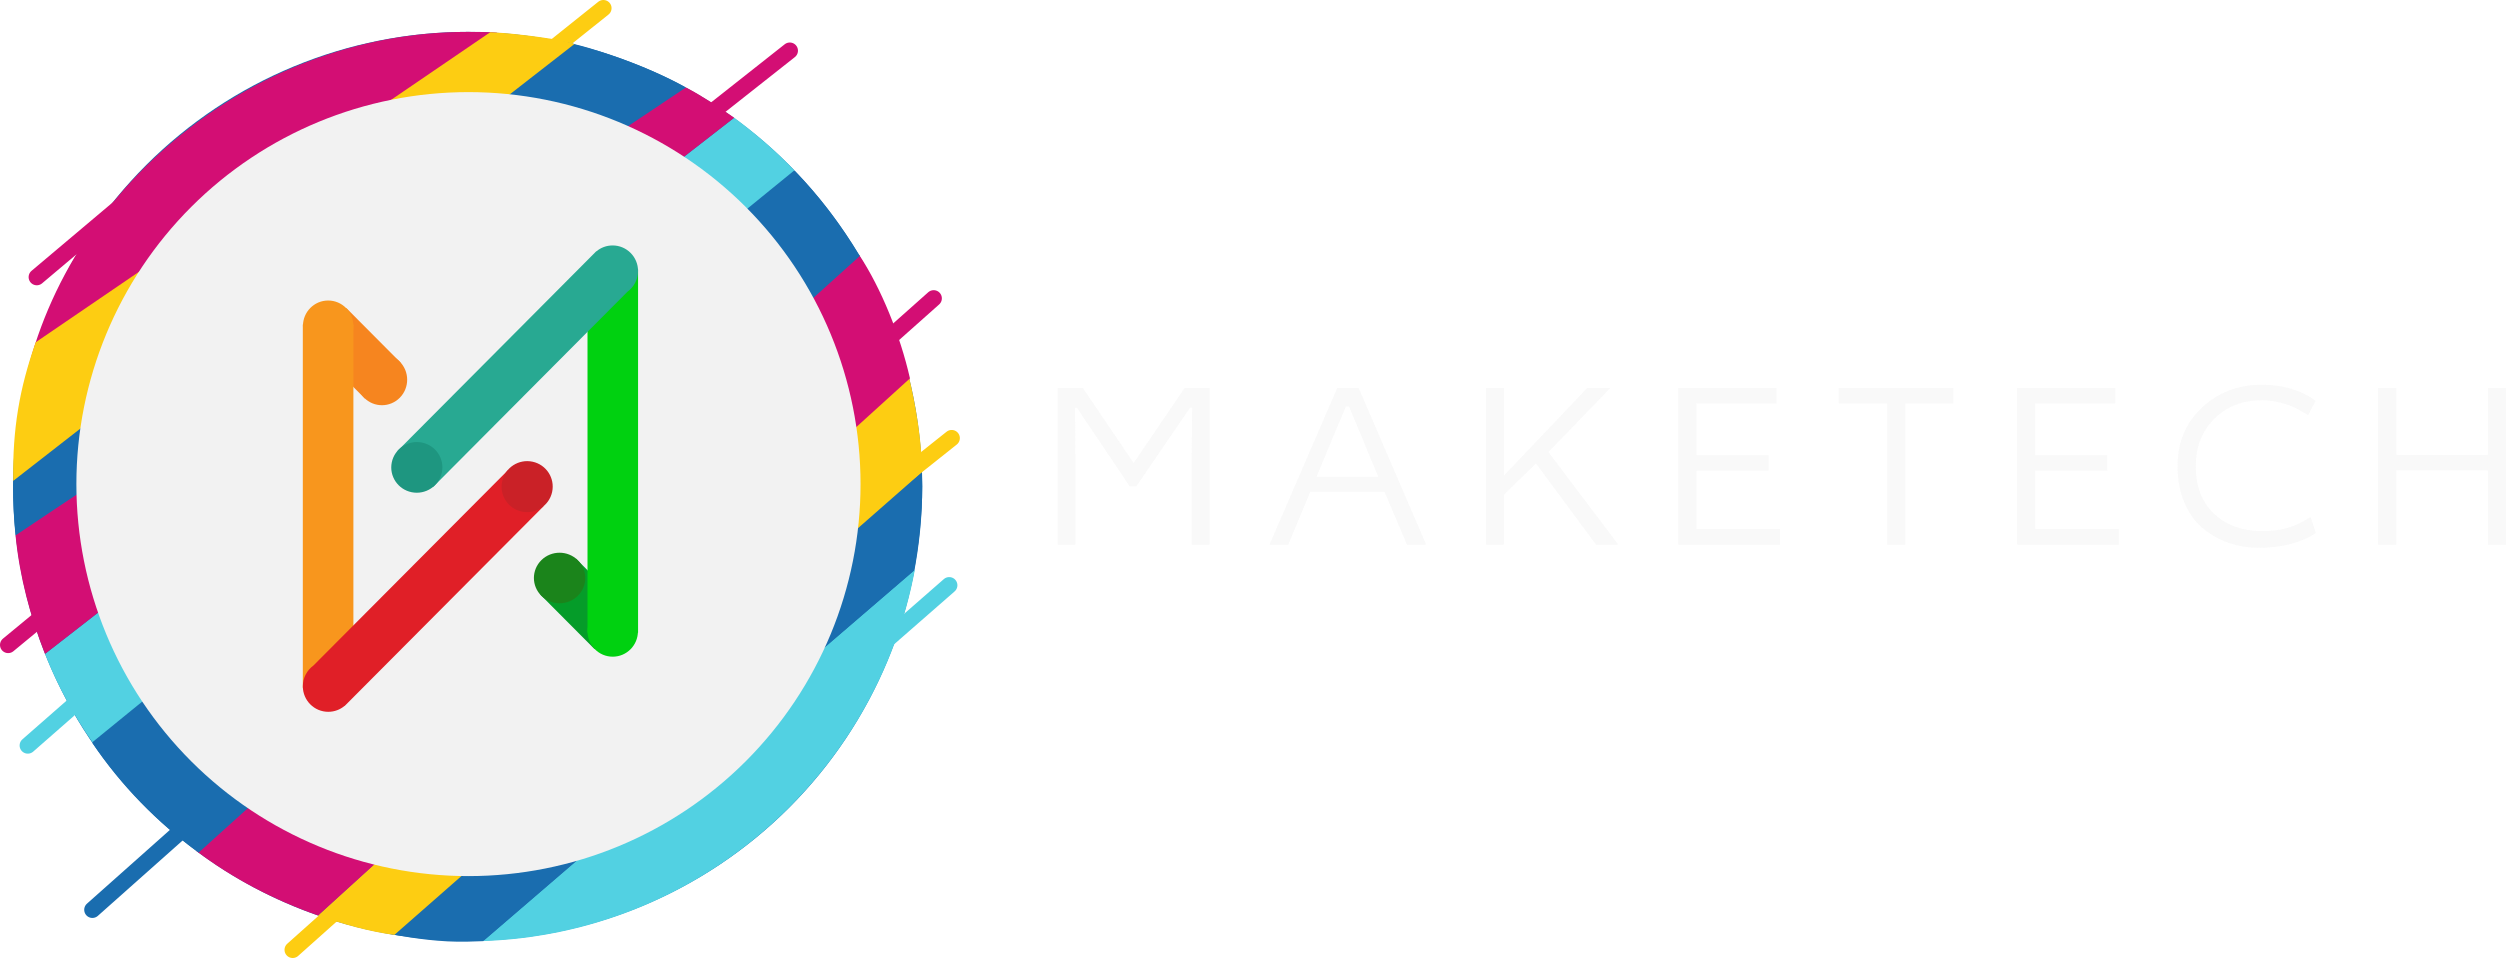 Maketech logo